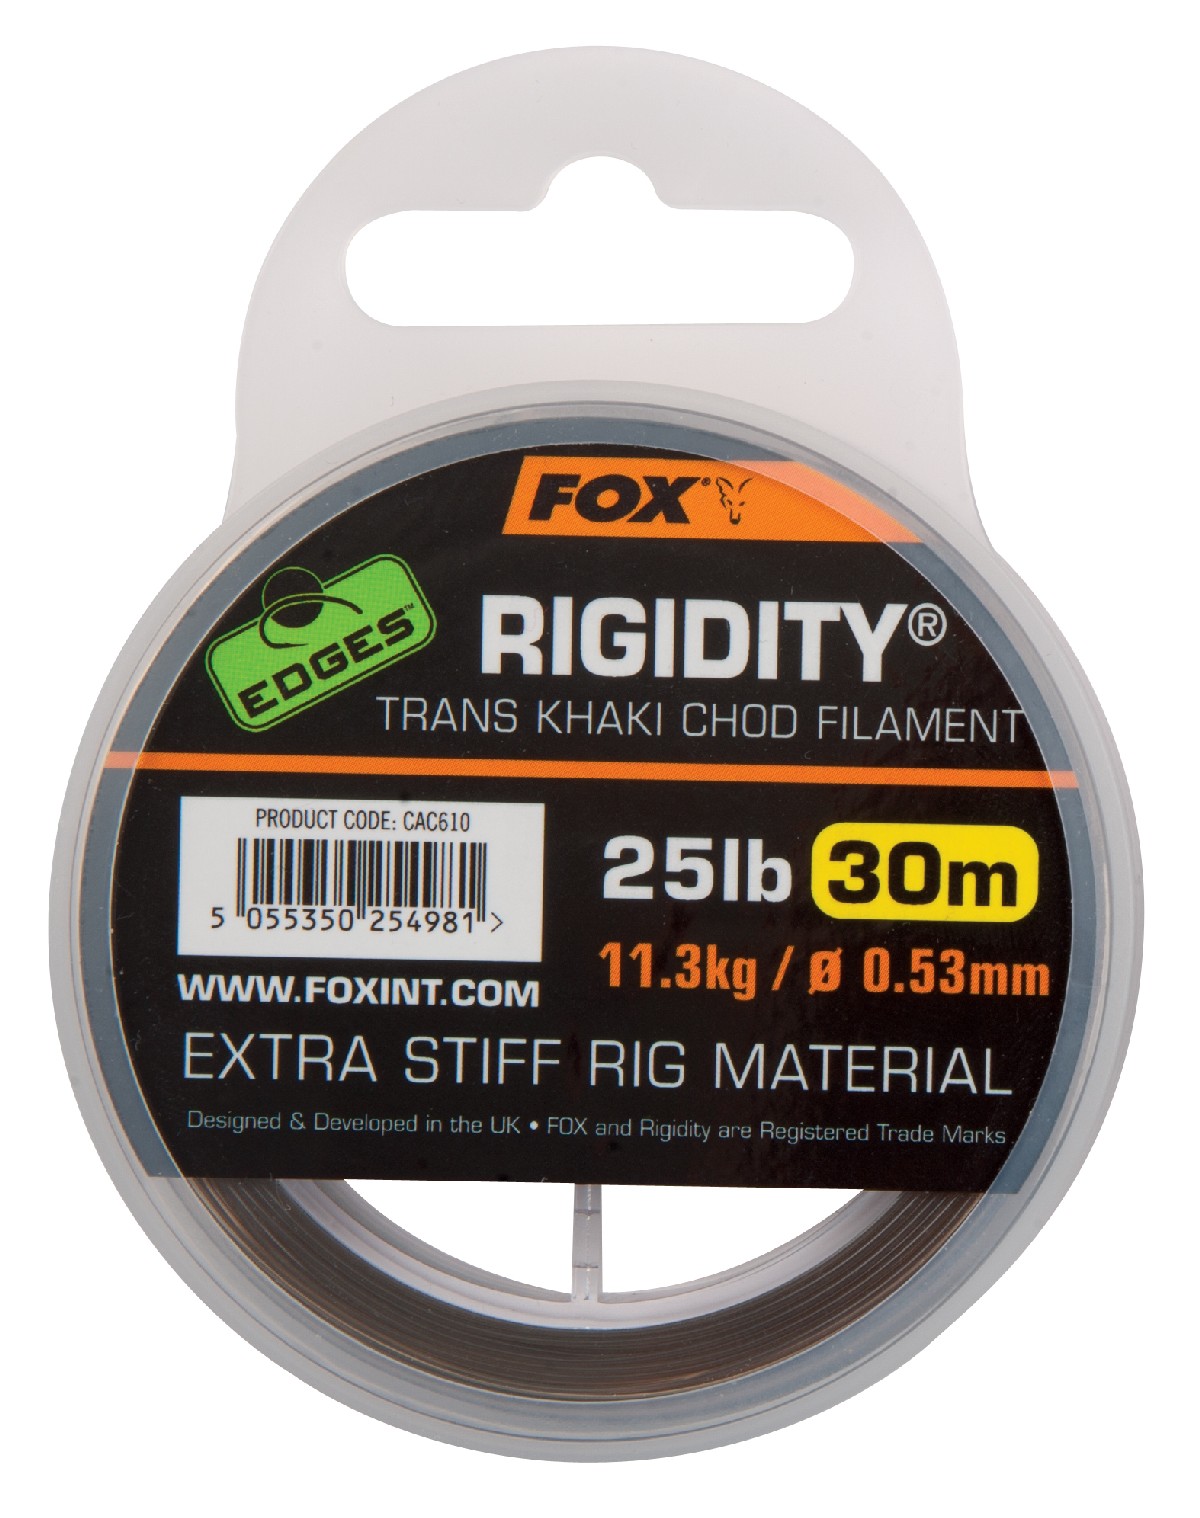 Fox Rigidity Chod Filament Trans Khaki Top Merken Winkel